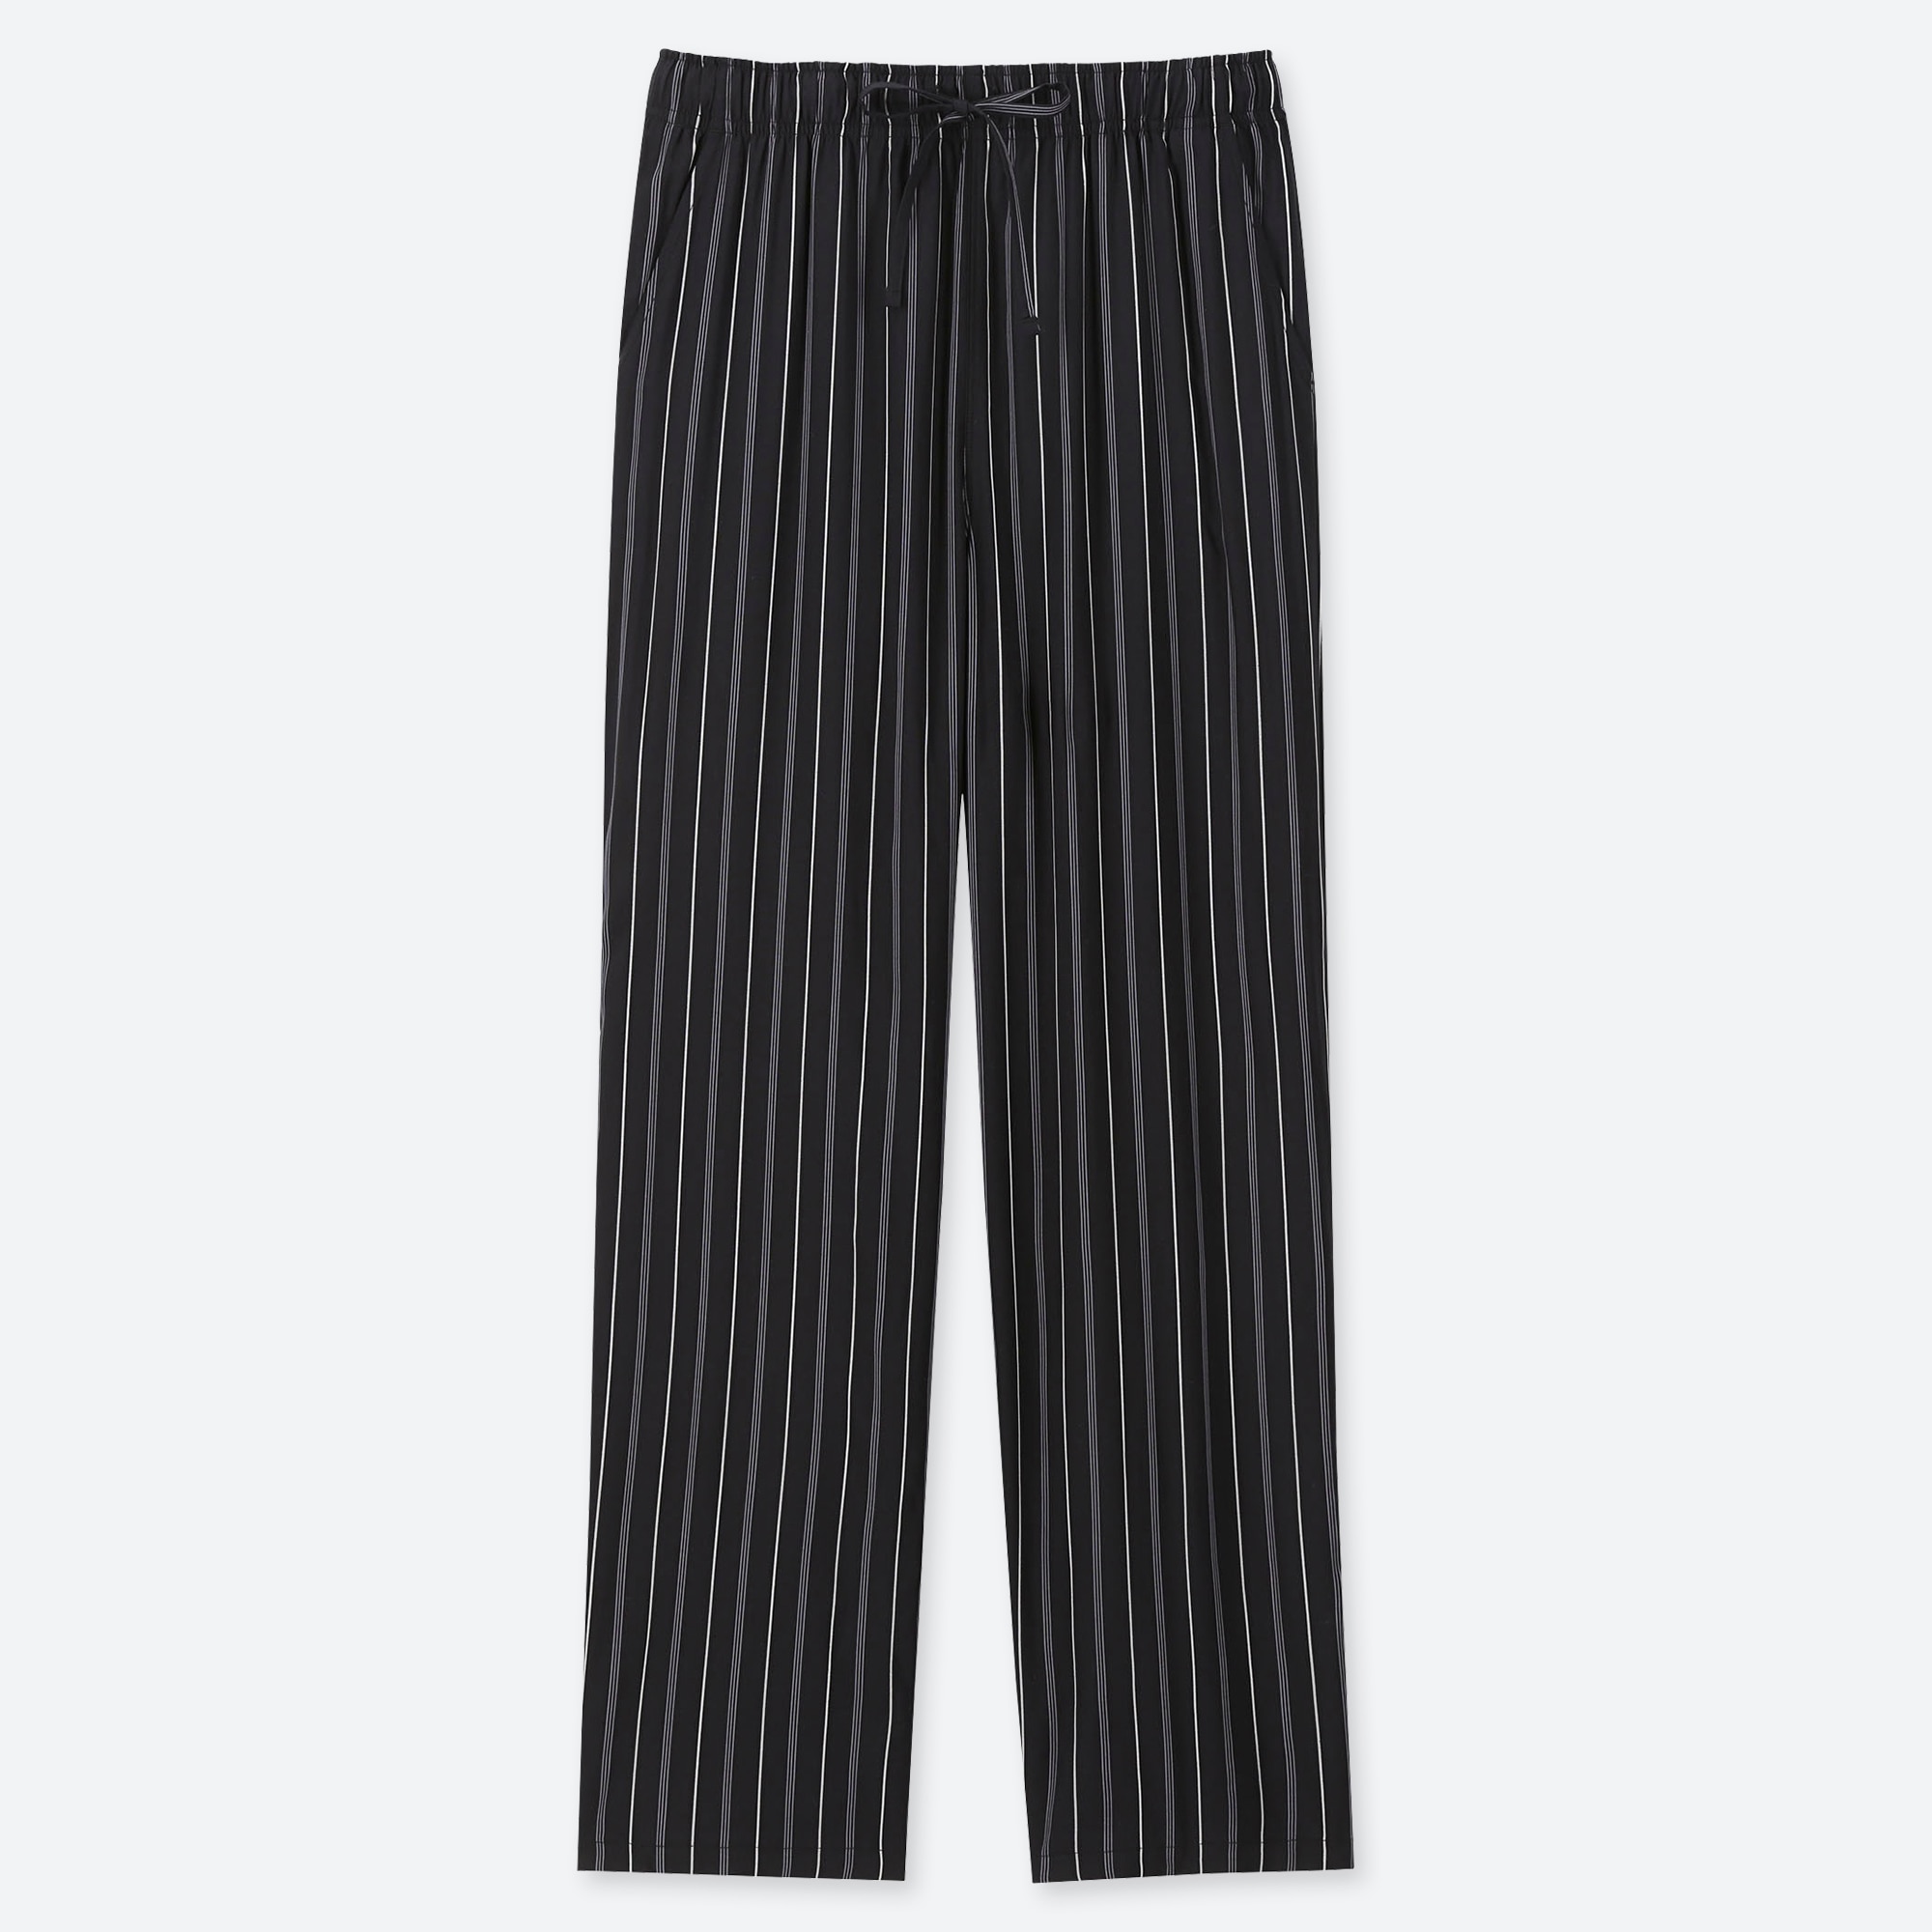 black striped pants womens